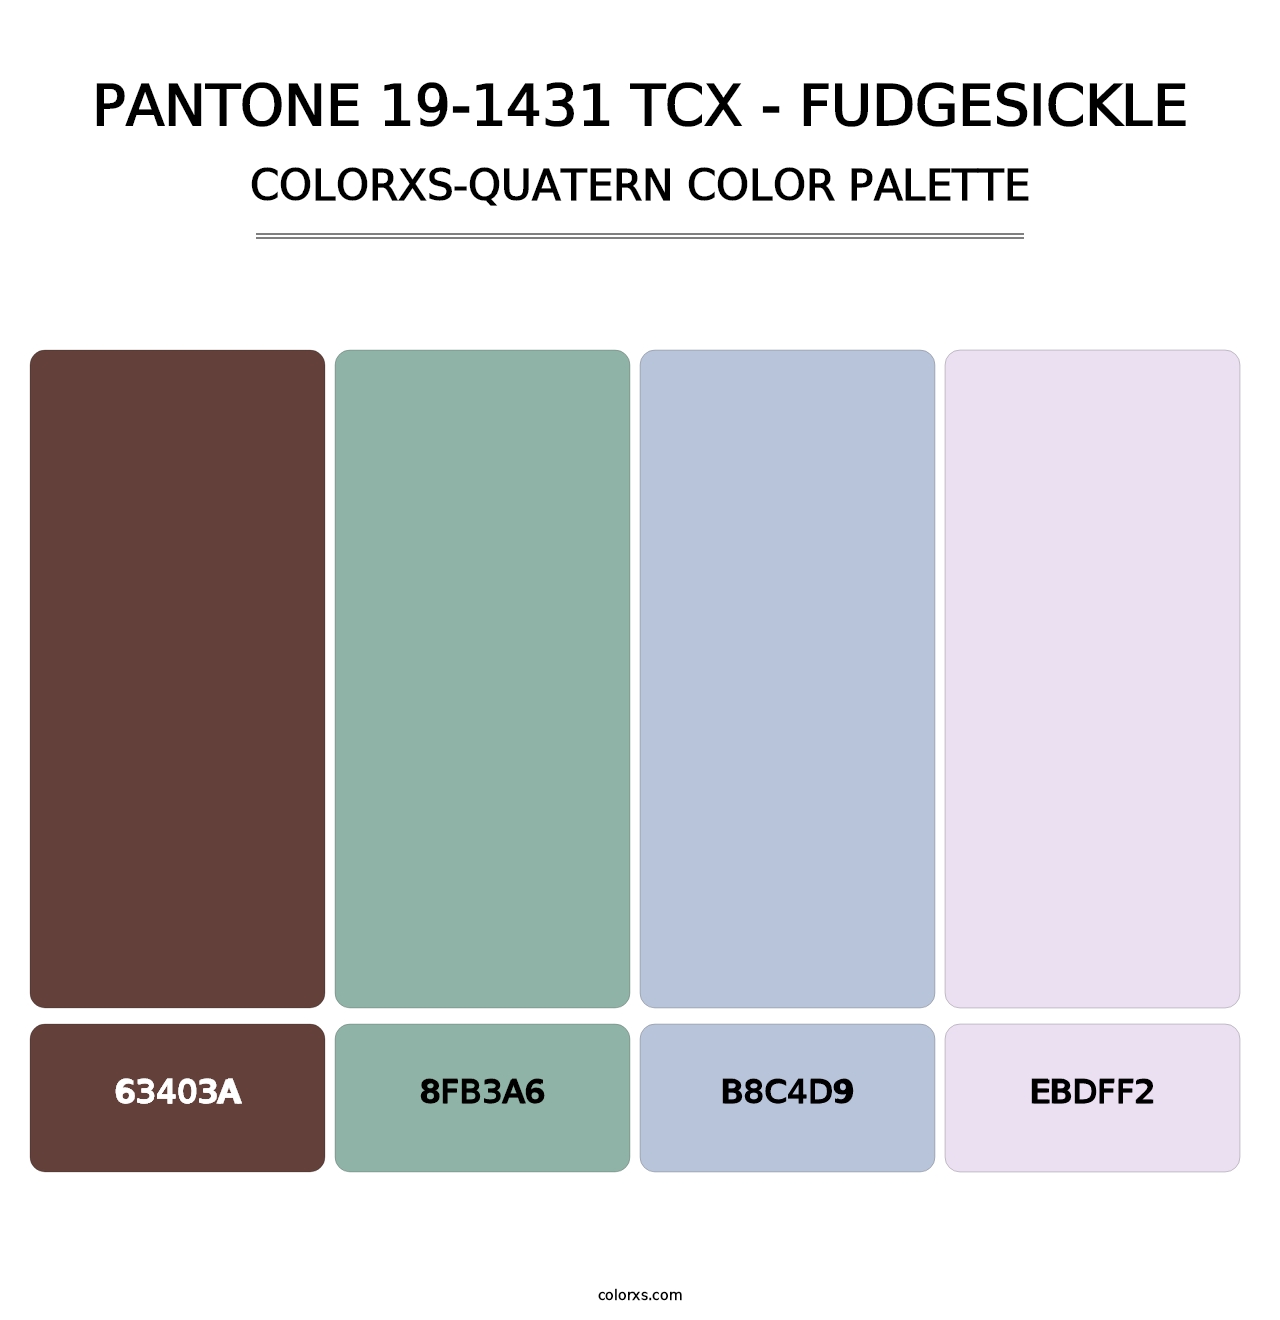 PANTONE 19-1431 TCX - Fudgesickle - Colorxs Quatern Palette